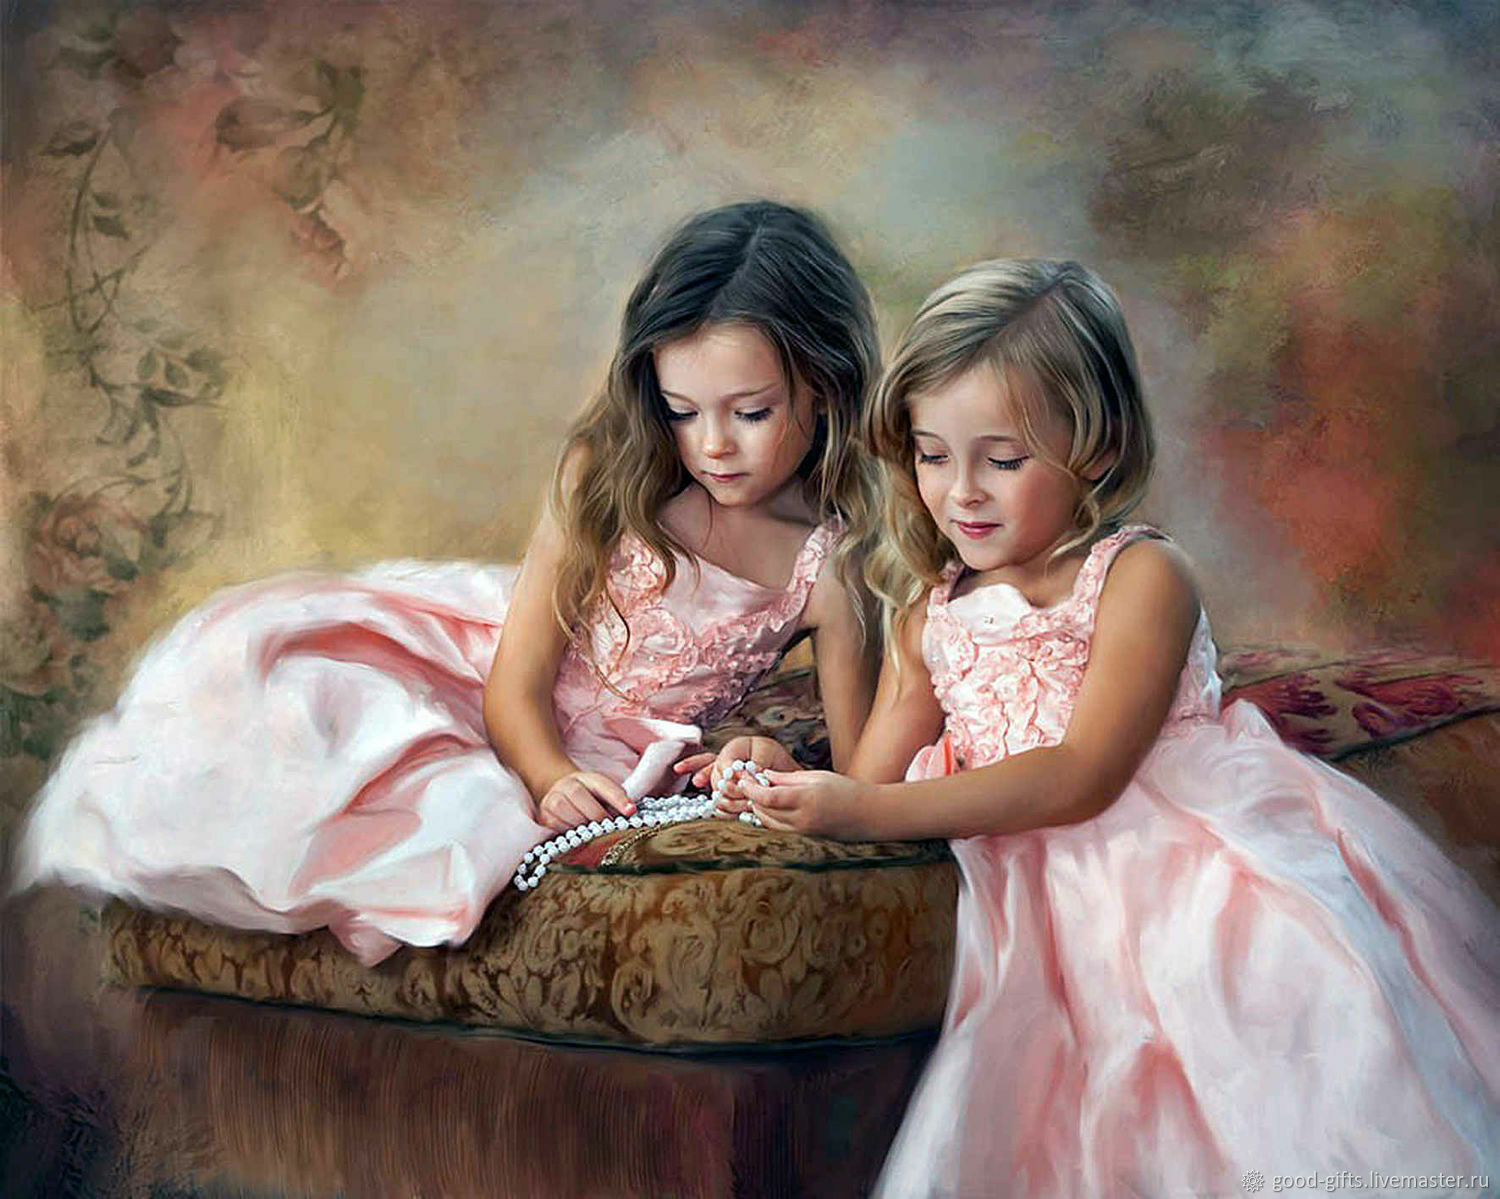 Песня сестре дети. Художник Richard Ramsey Richard. Дети в живописи. Живопись две девочки.